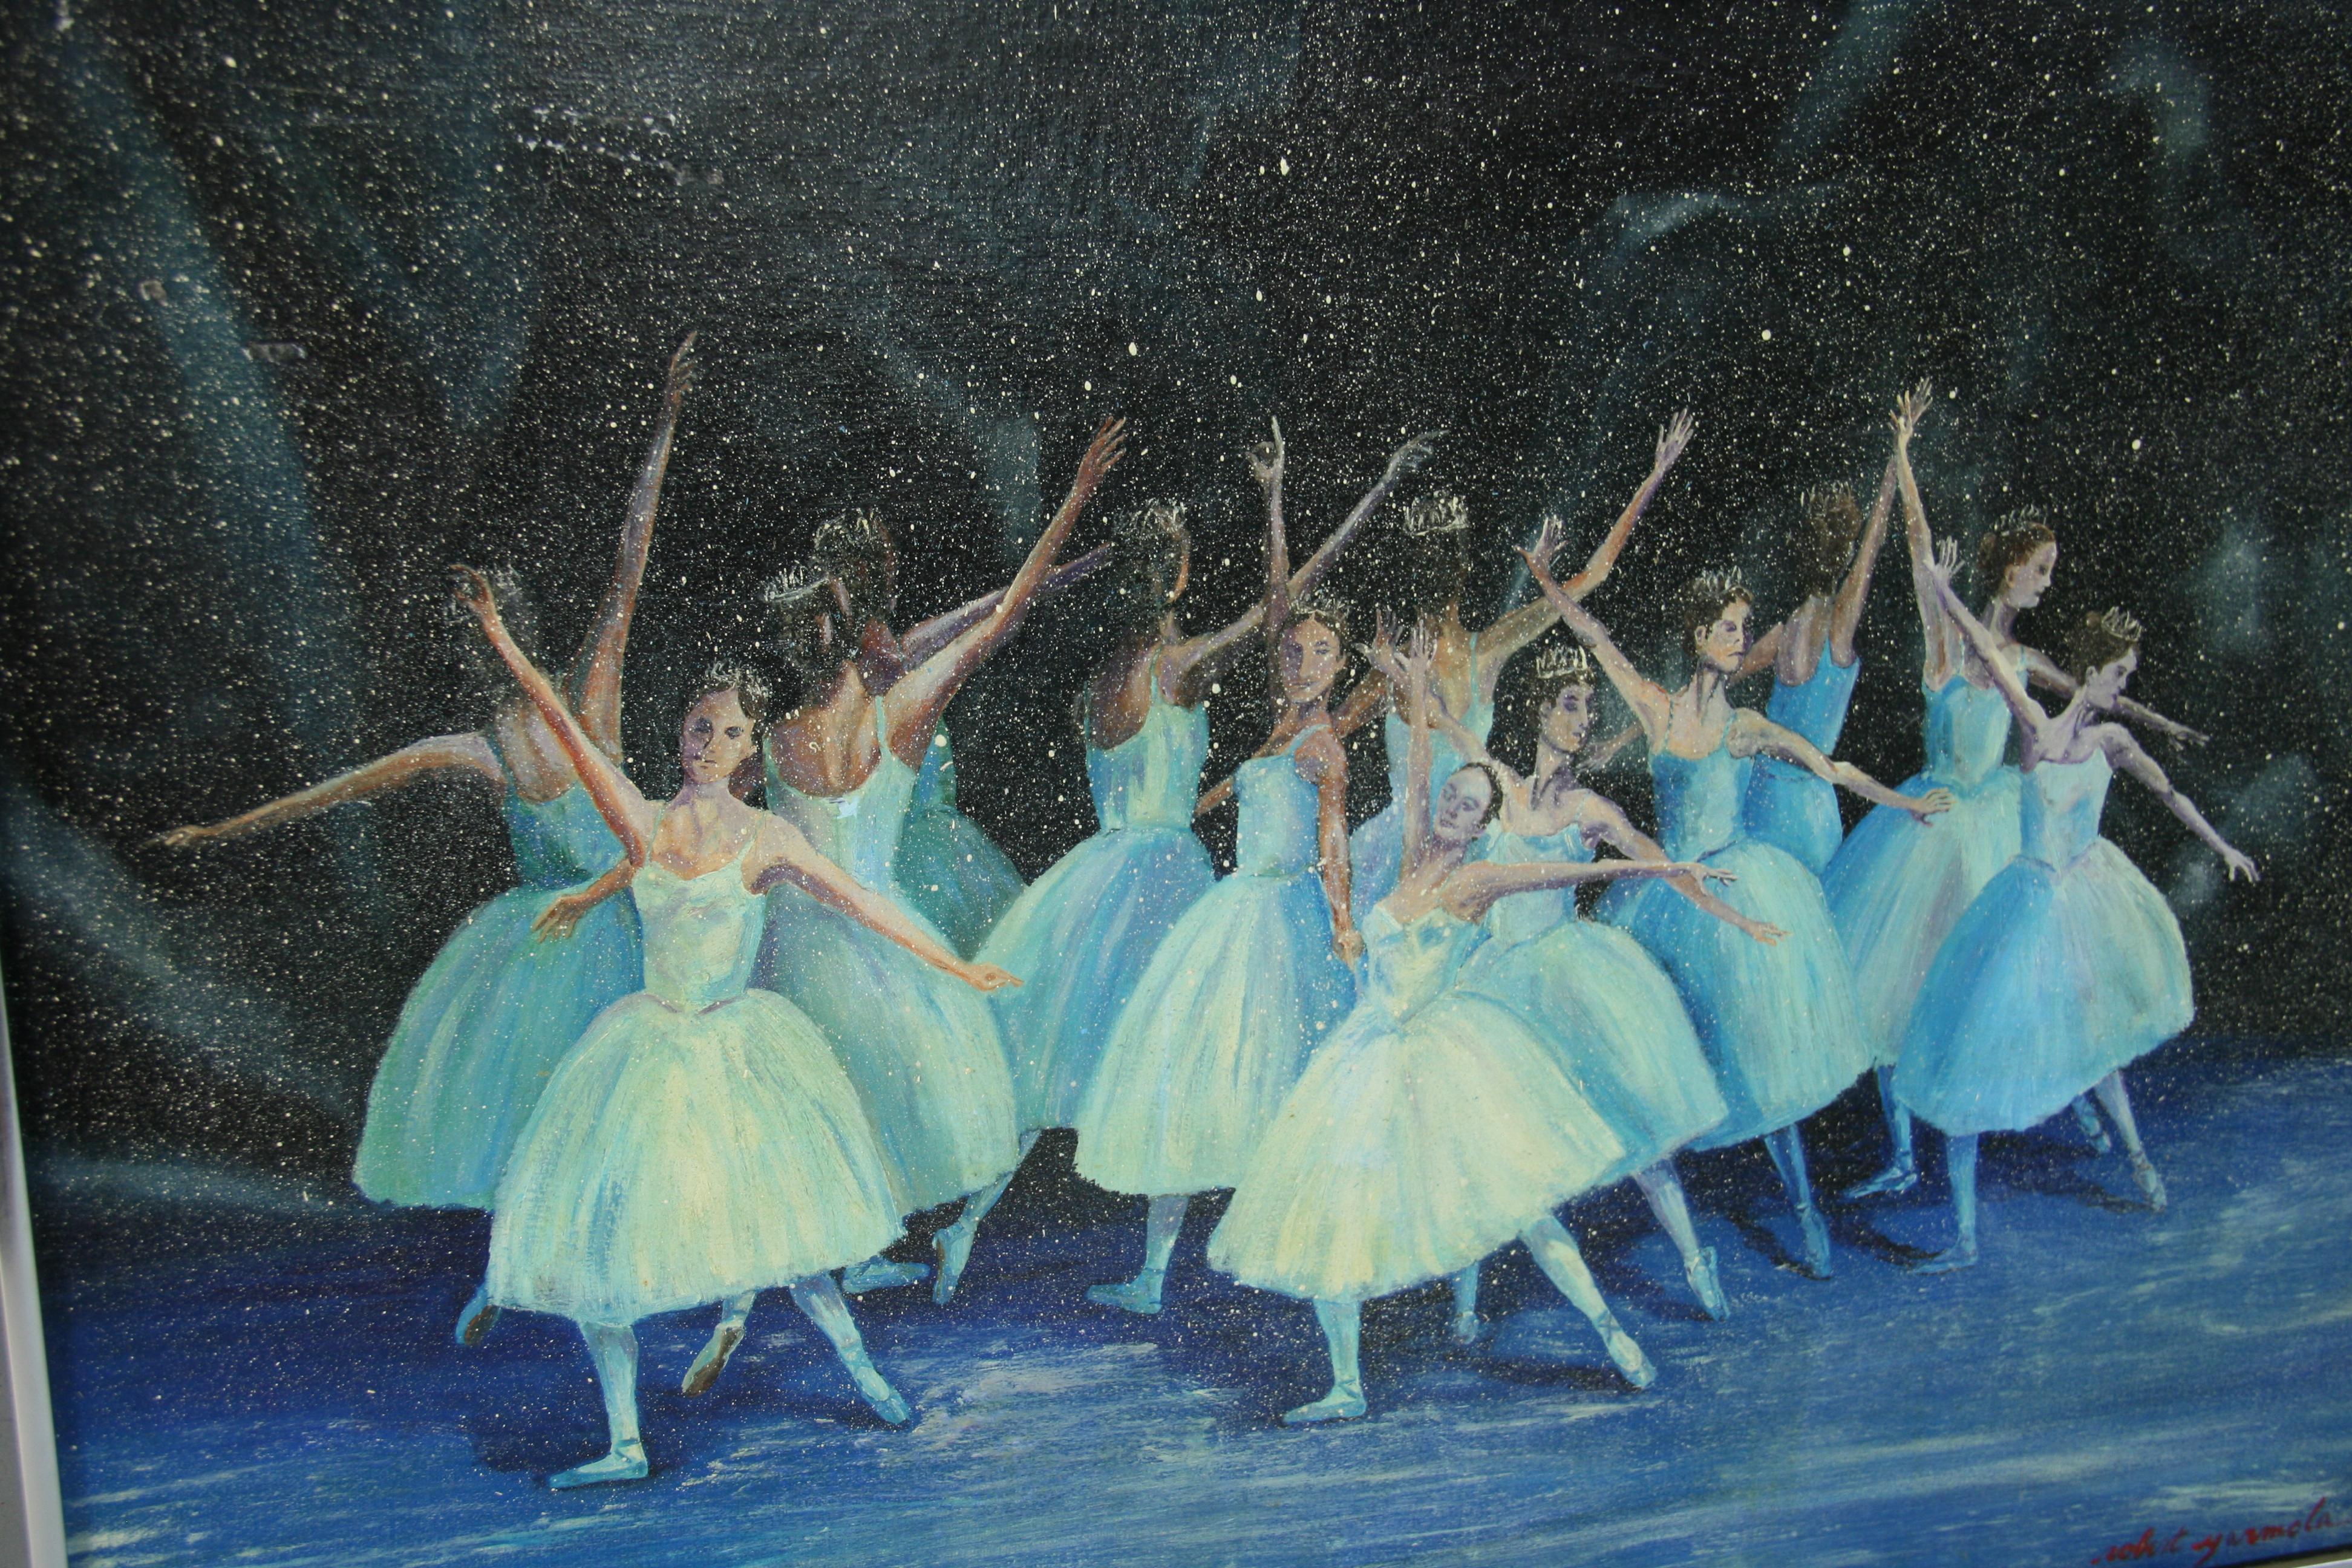 5001 Vintage Impressionist oil on canvas set in a metal frame depicting a ballet performance